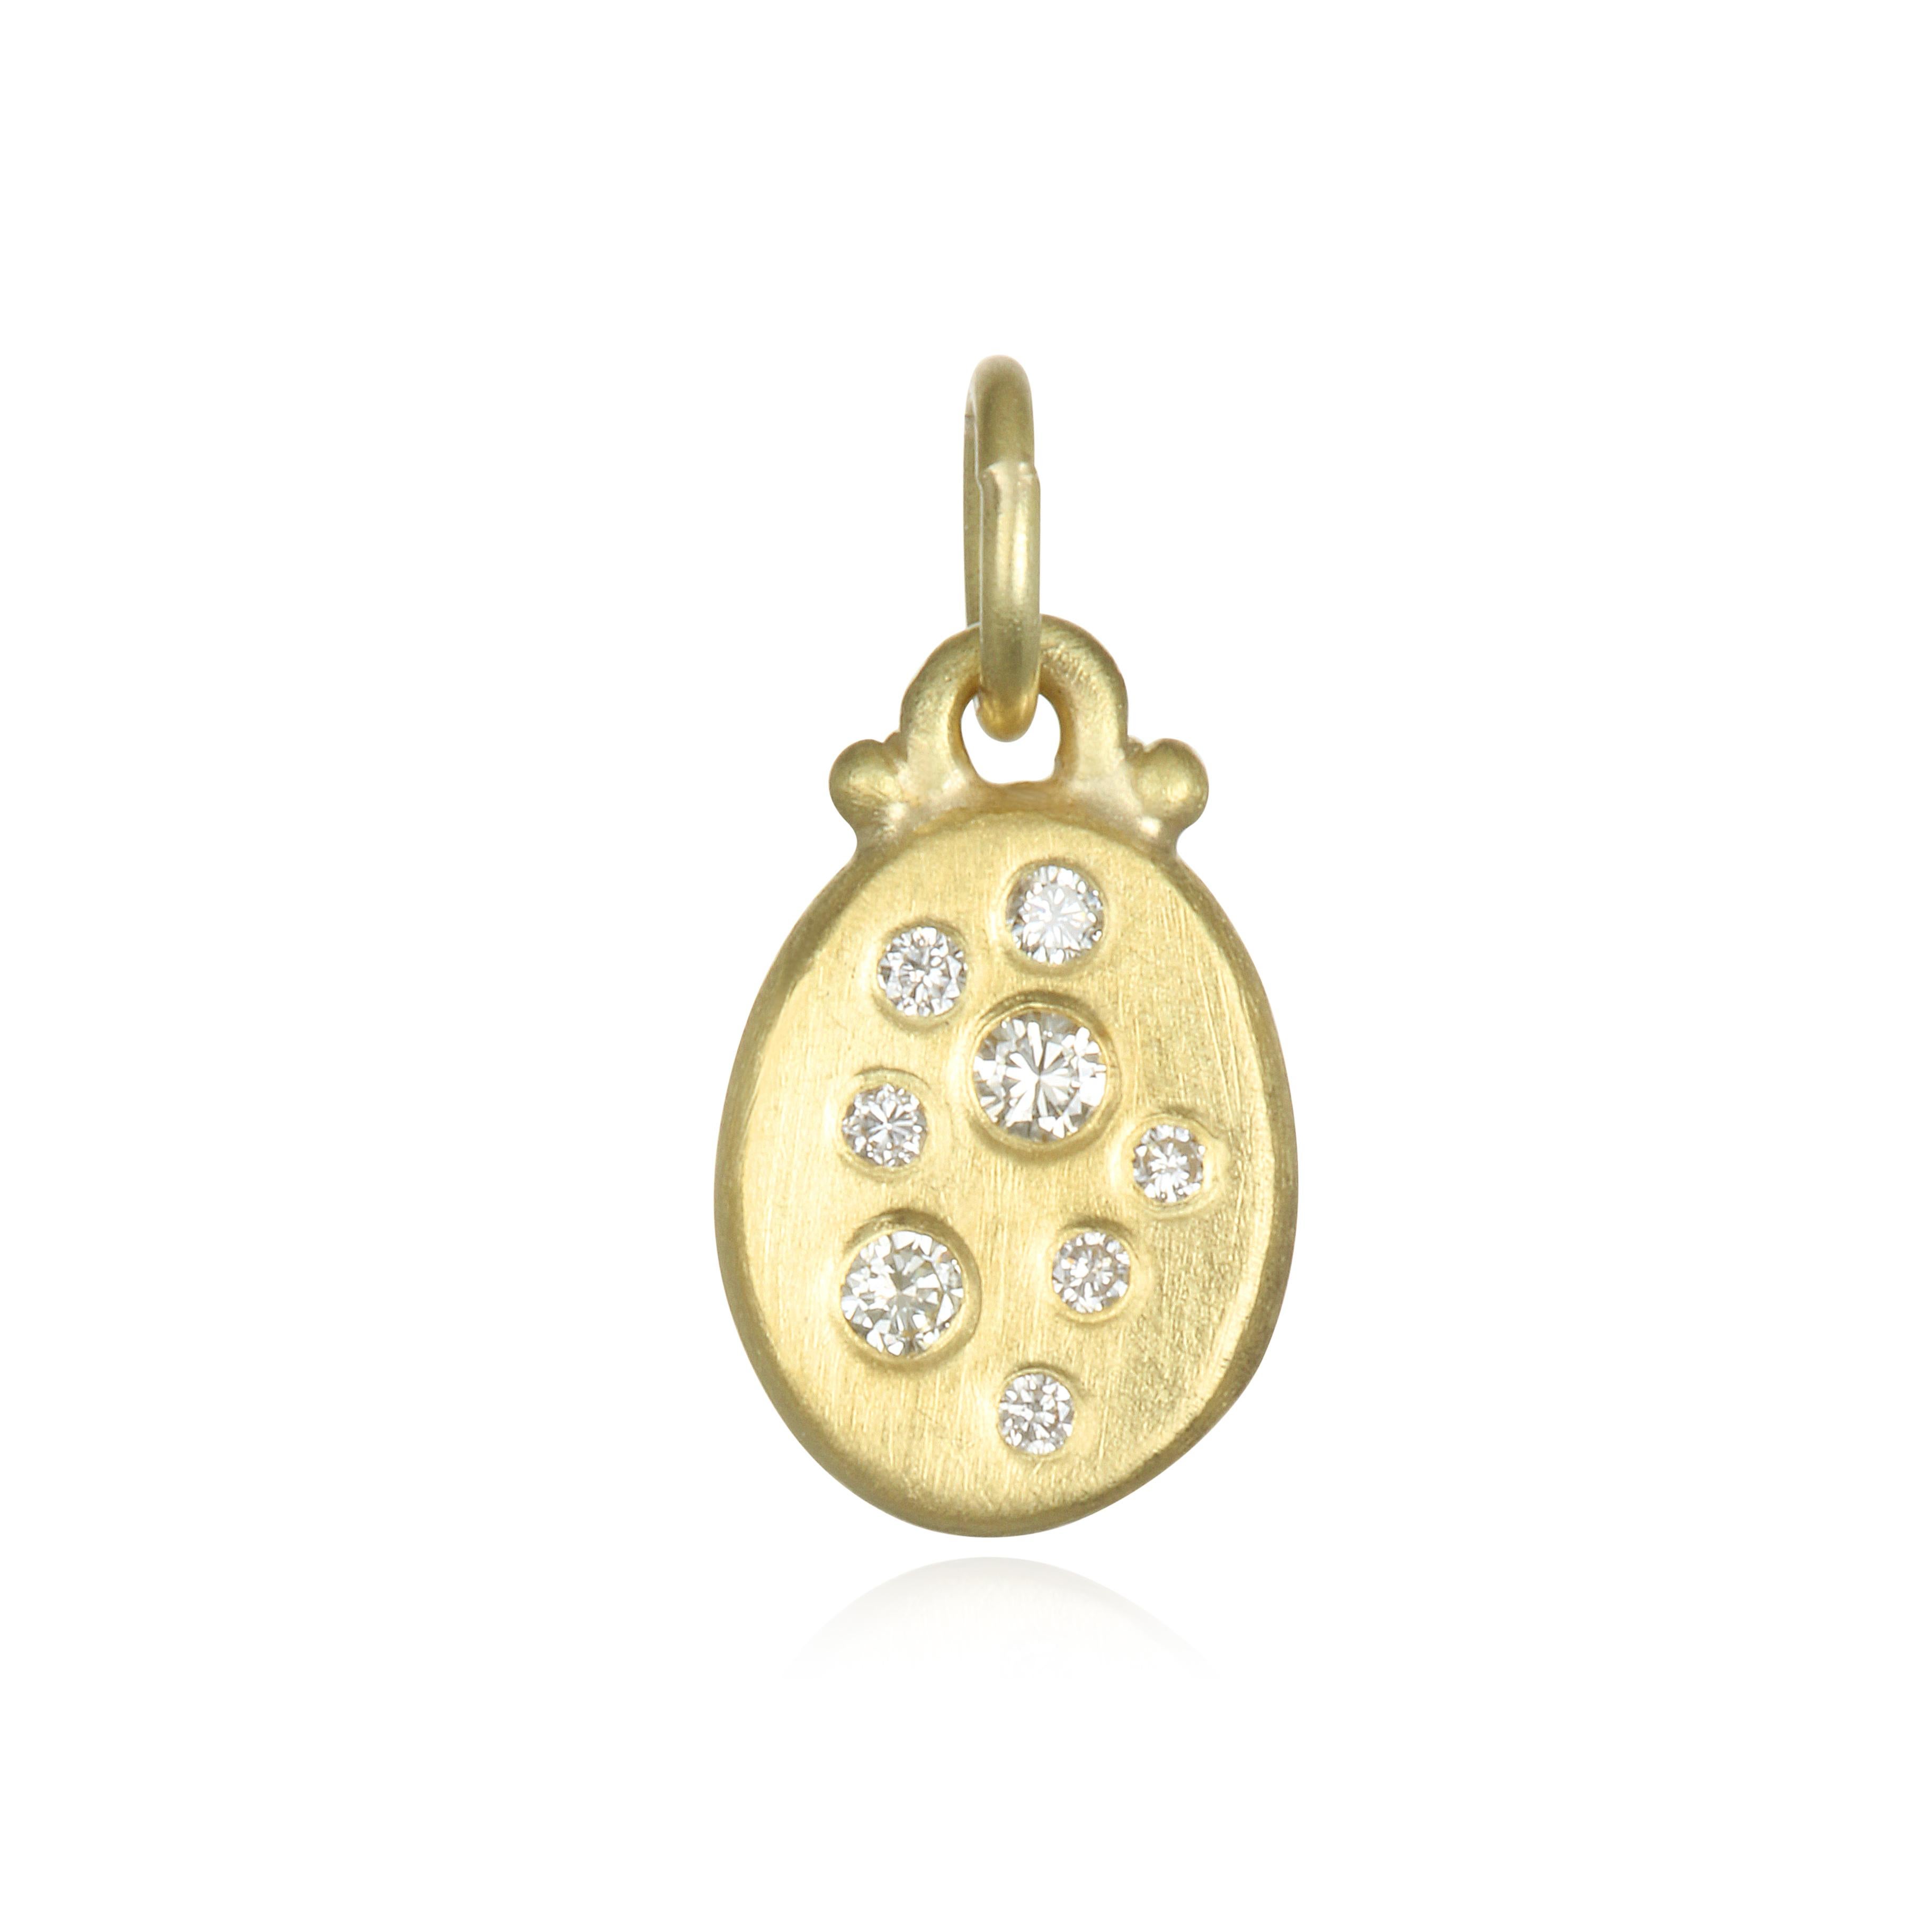 Polyvalente et facile à porter, la version mini des pendentifs Dog Tag en diamant de Faye Kim est parfaite pour être portée tous les jours ou lors d'occasions spéciales. Le pendentif est fini mat en or 18 carats. Qu'il soit porté seul ou associé à